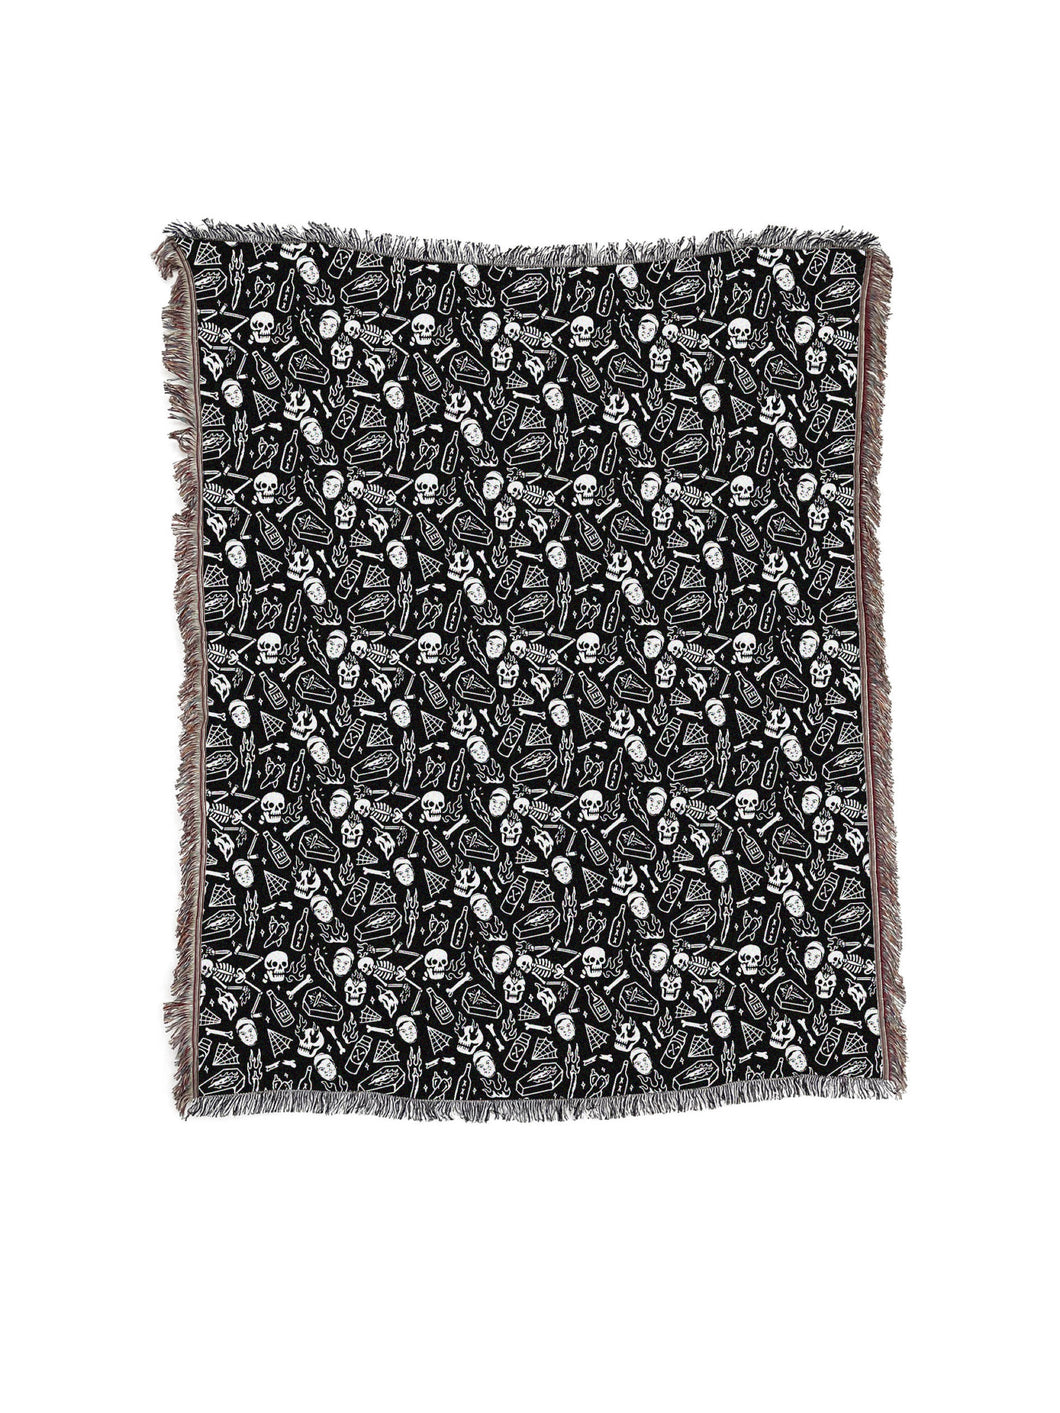 Tubby Tom's Woven Luxury Tassel Blanket